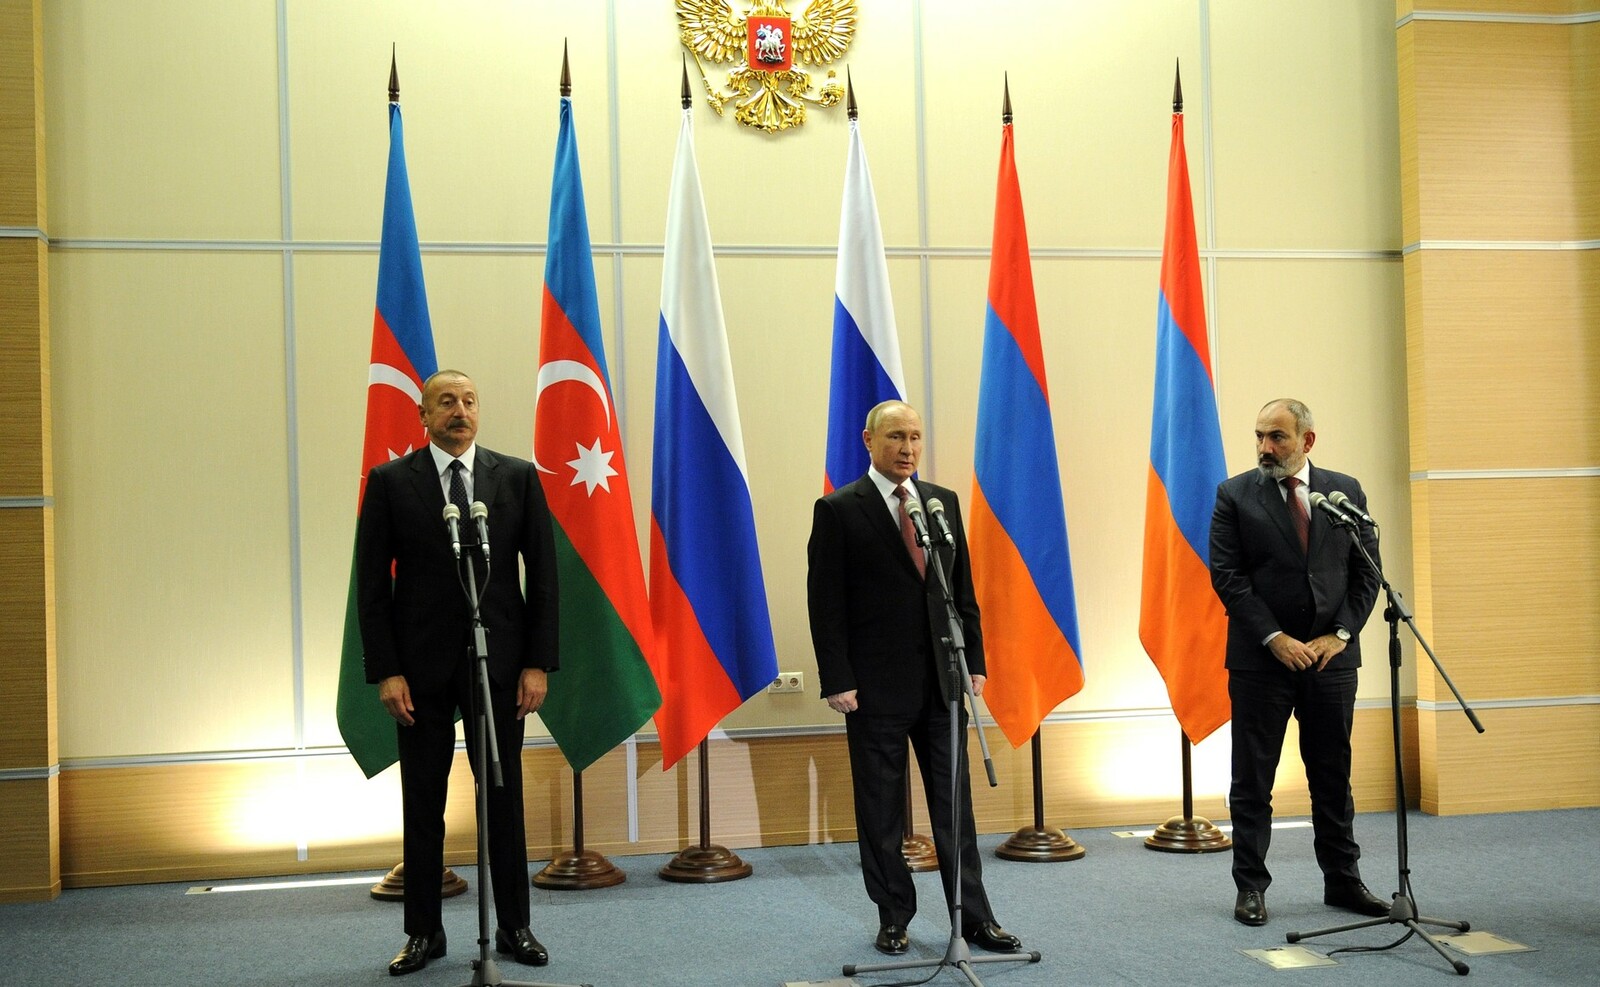 Заявления по итогам трёхсторонних переговоров лидеров России, Азербайджана и Армении